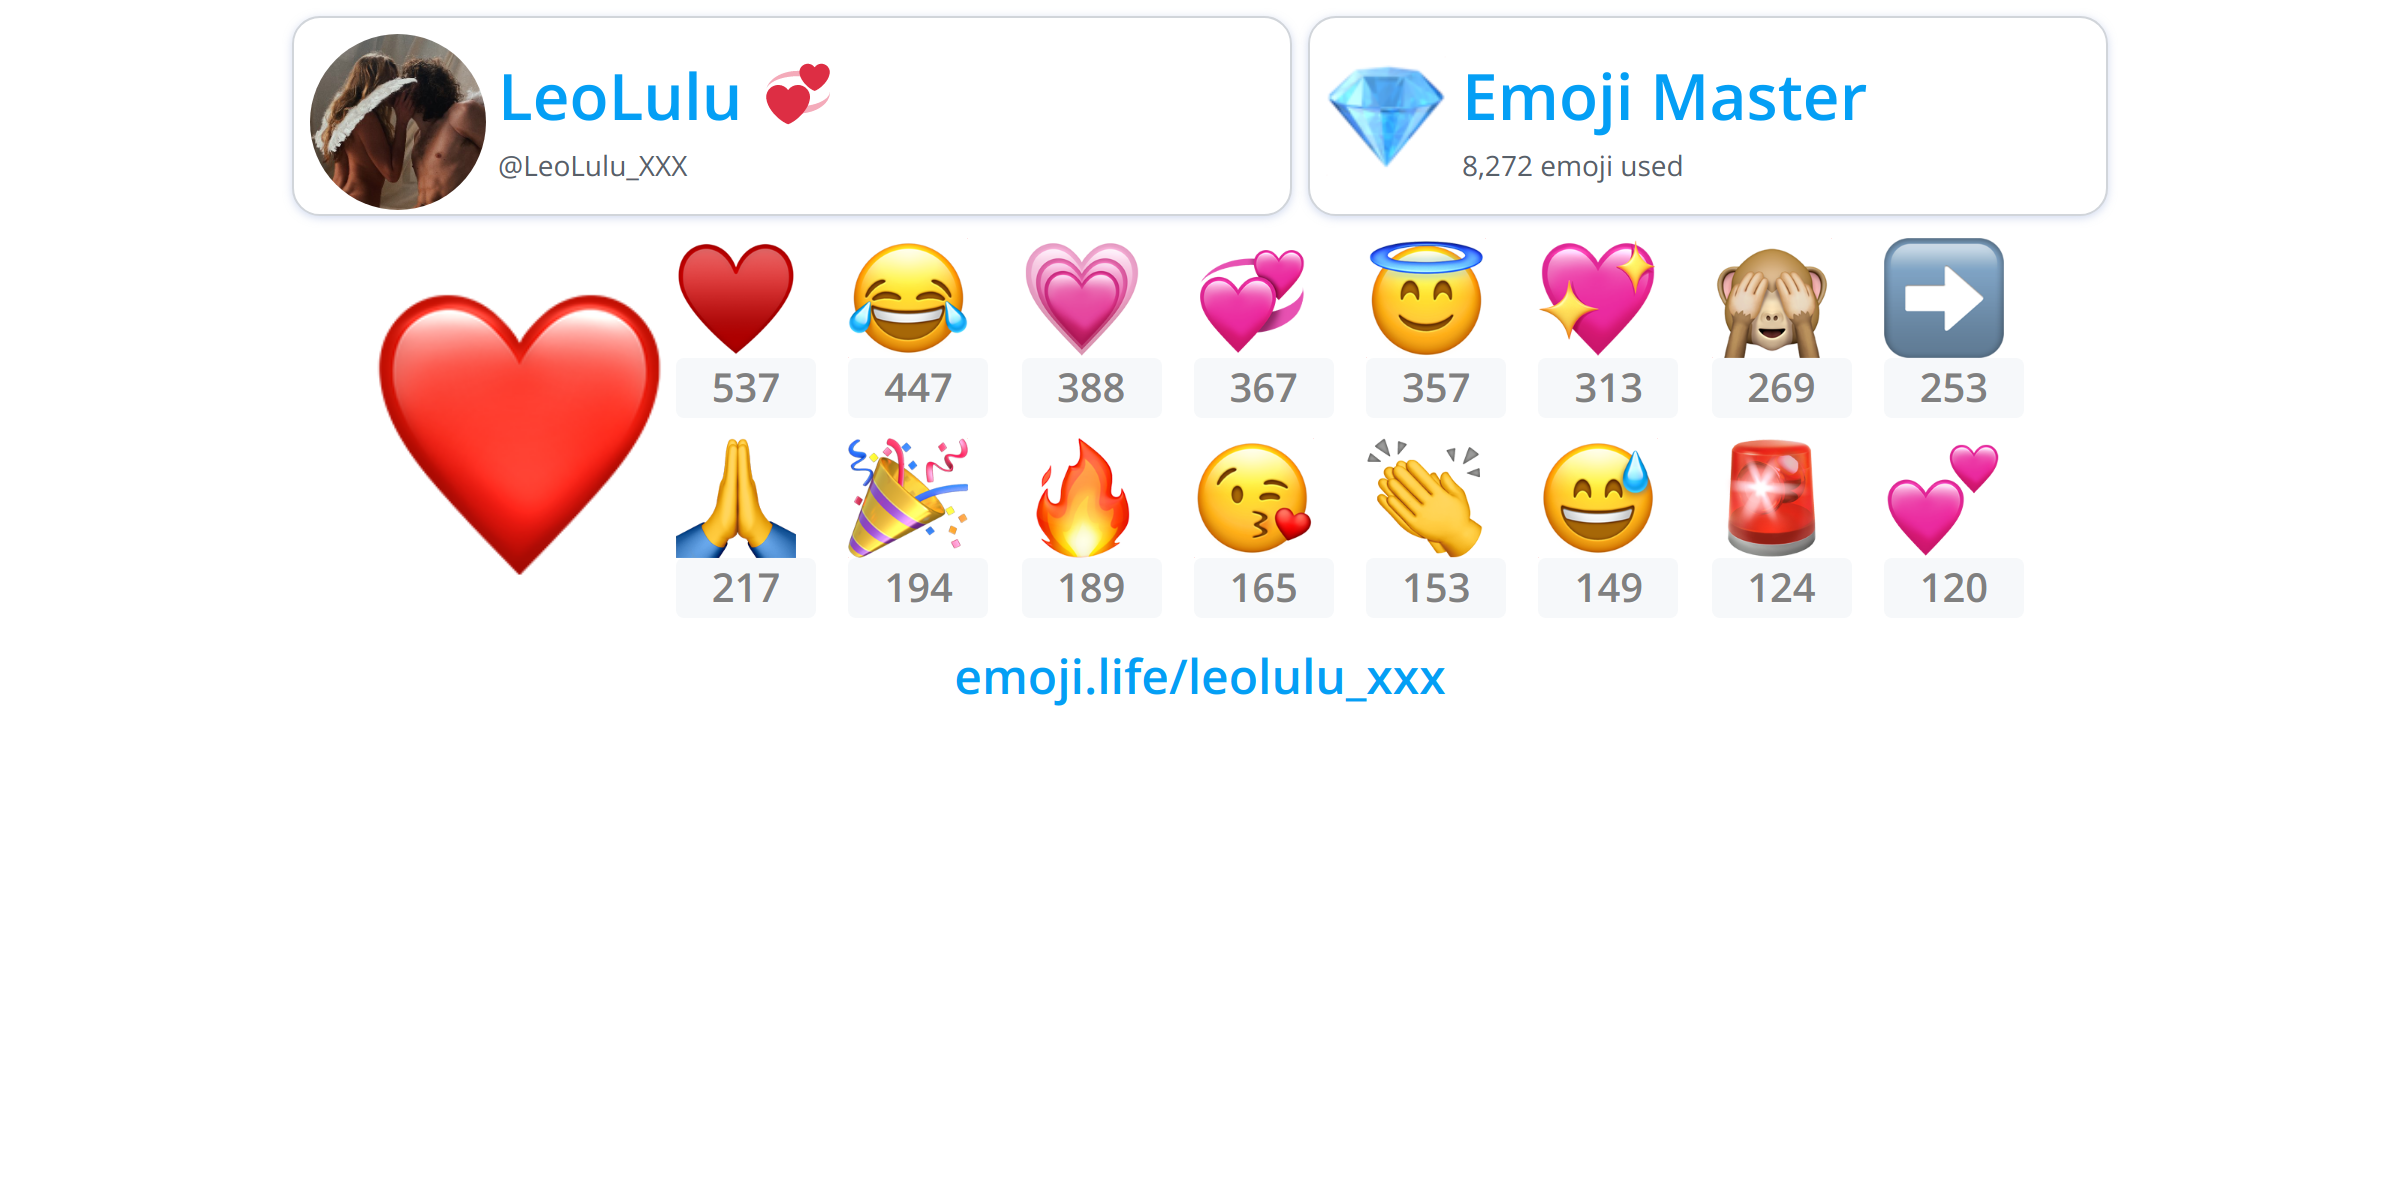 Leolulu Xxx Emoji Life